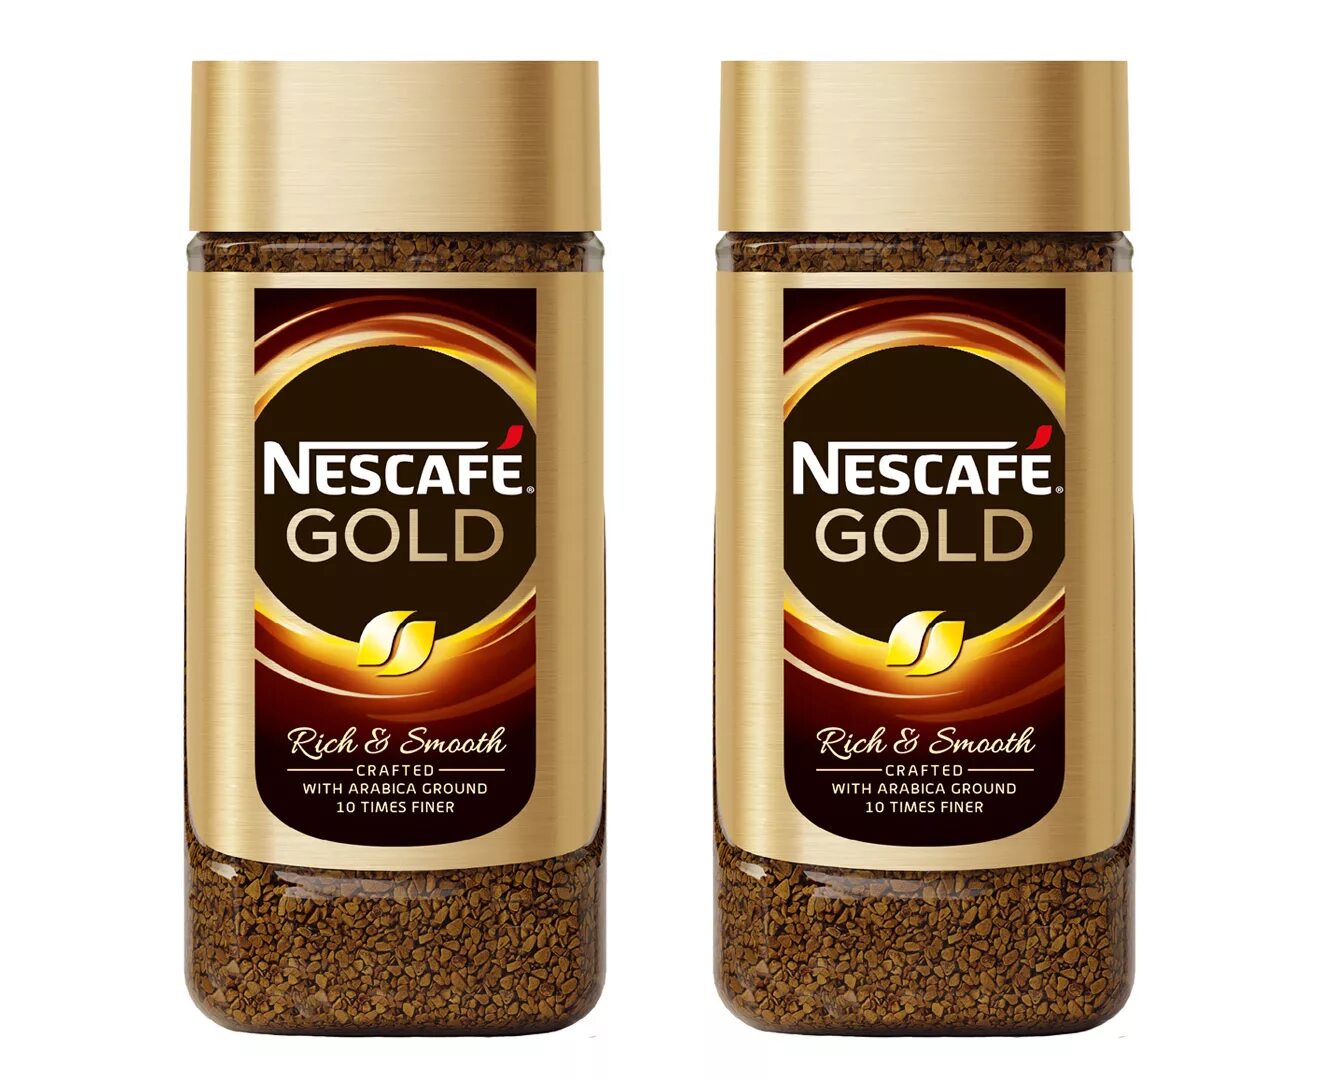 Кофе растворимый Нескафе Голд. Кофе Nescafe Gold Barista 85гр ст/б. Кофе Нескафе Голд стекло 95 гр. Нескафе Голд растворимый с карамелью. Кофе растворимый лучший по качеству